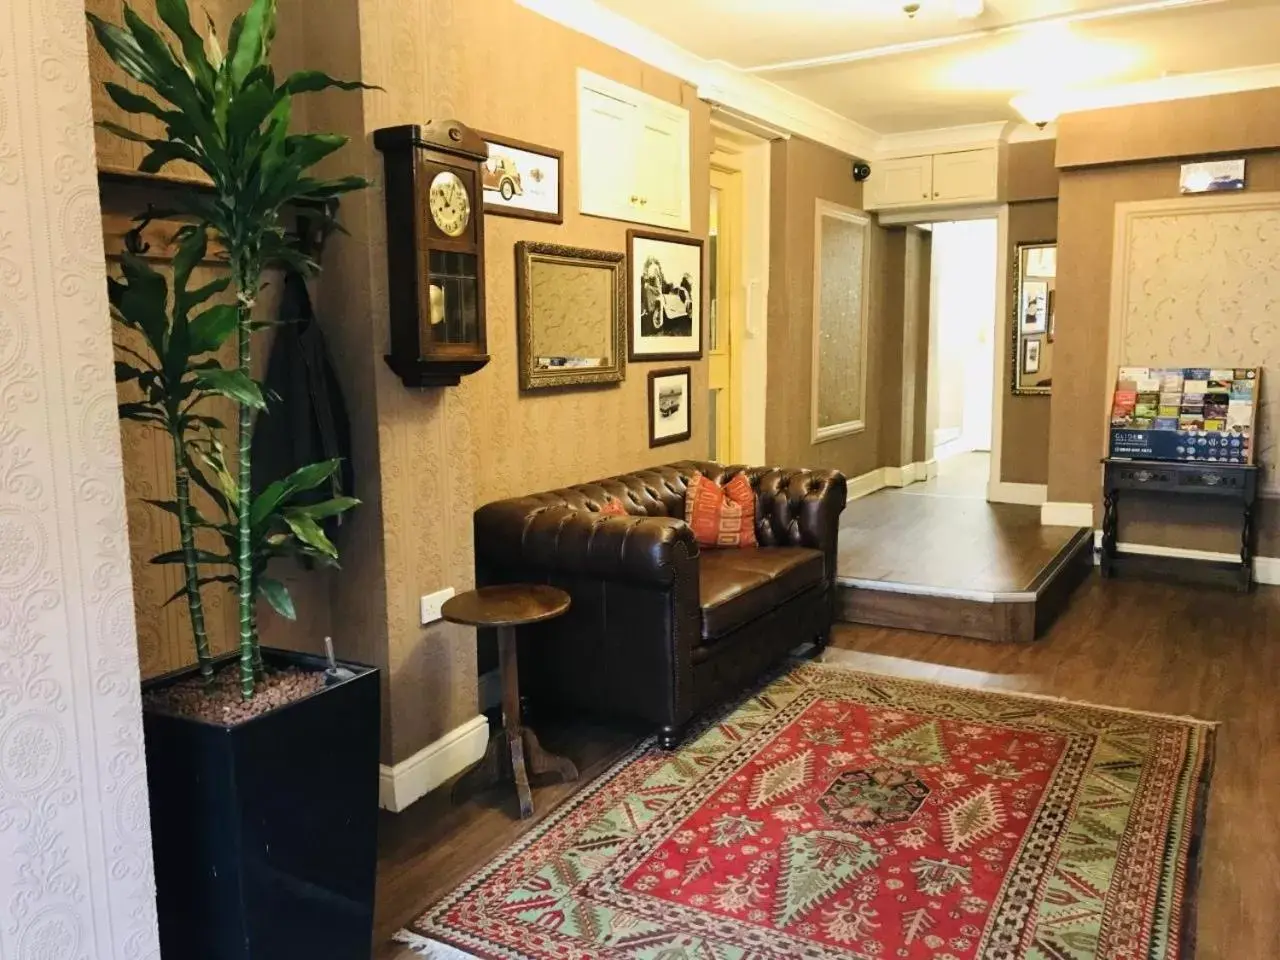 Lobby or reception, Lobby/Reception in Great Malvern Hotel